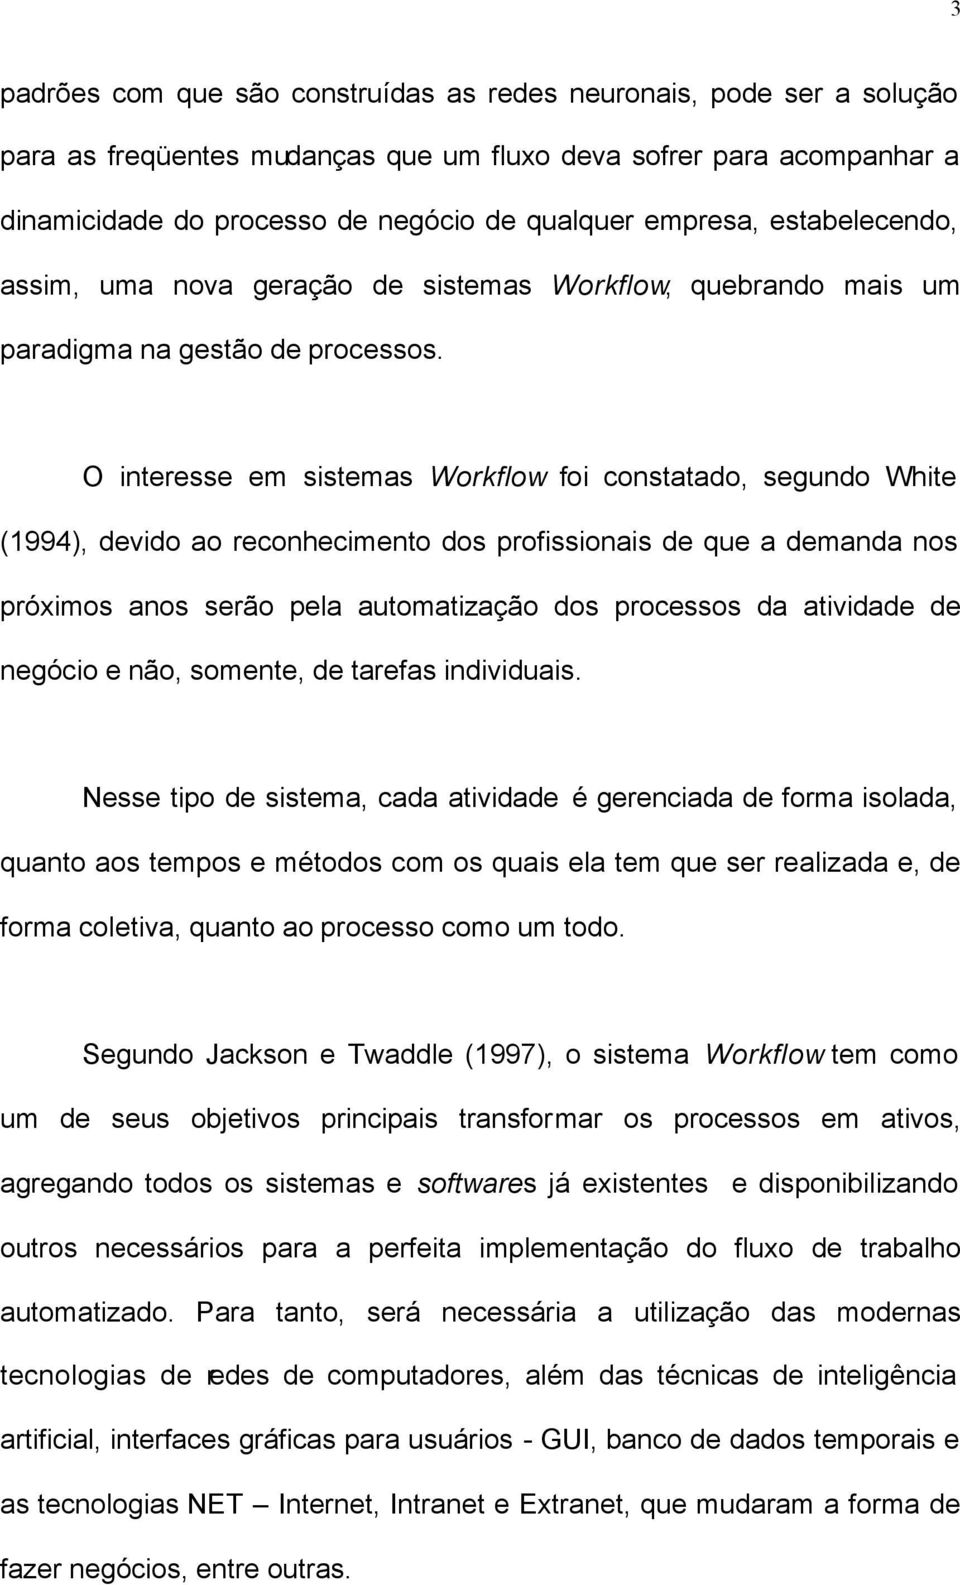 O interesse em sistemas Workflow foi constatado, segundo White (1994), devido ao reconhecimento dos profissionais de que a demanda nos próximos anos serão pela automatização dos processos da